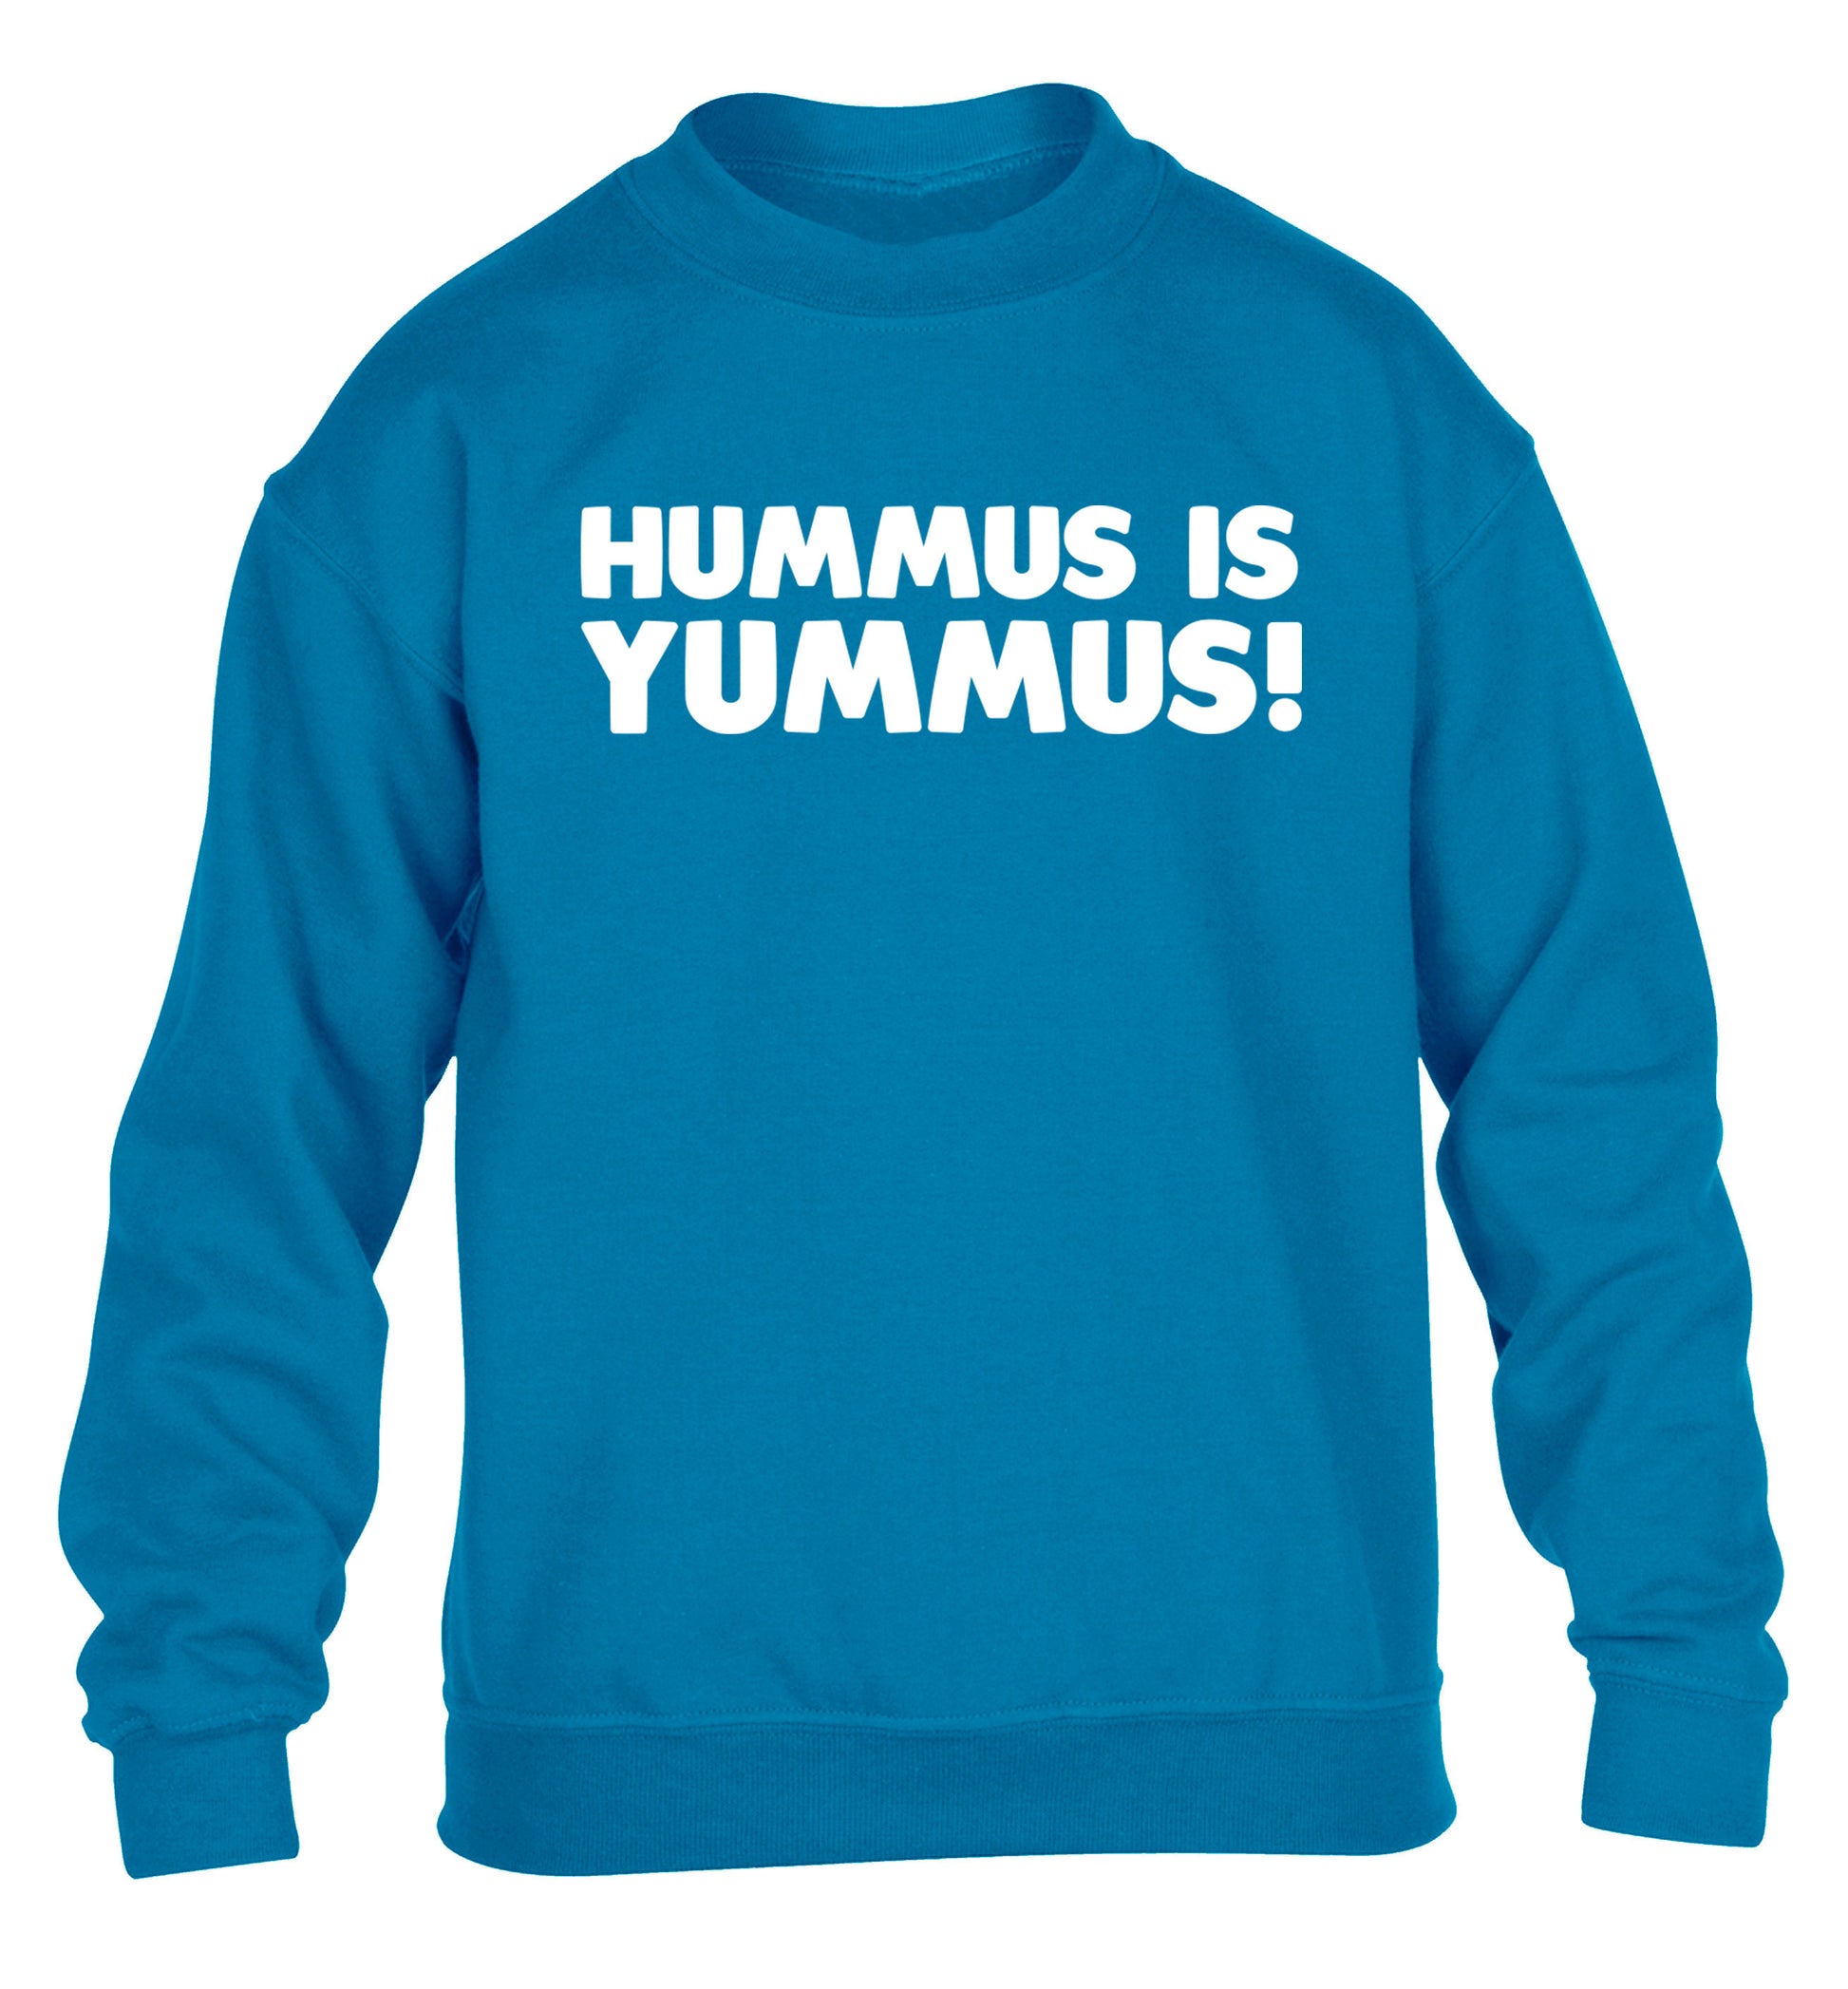 Hummus is Yummus  children's blue sweater 12-14 Years